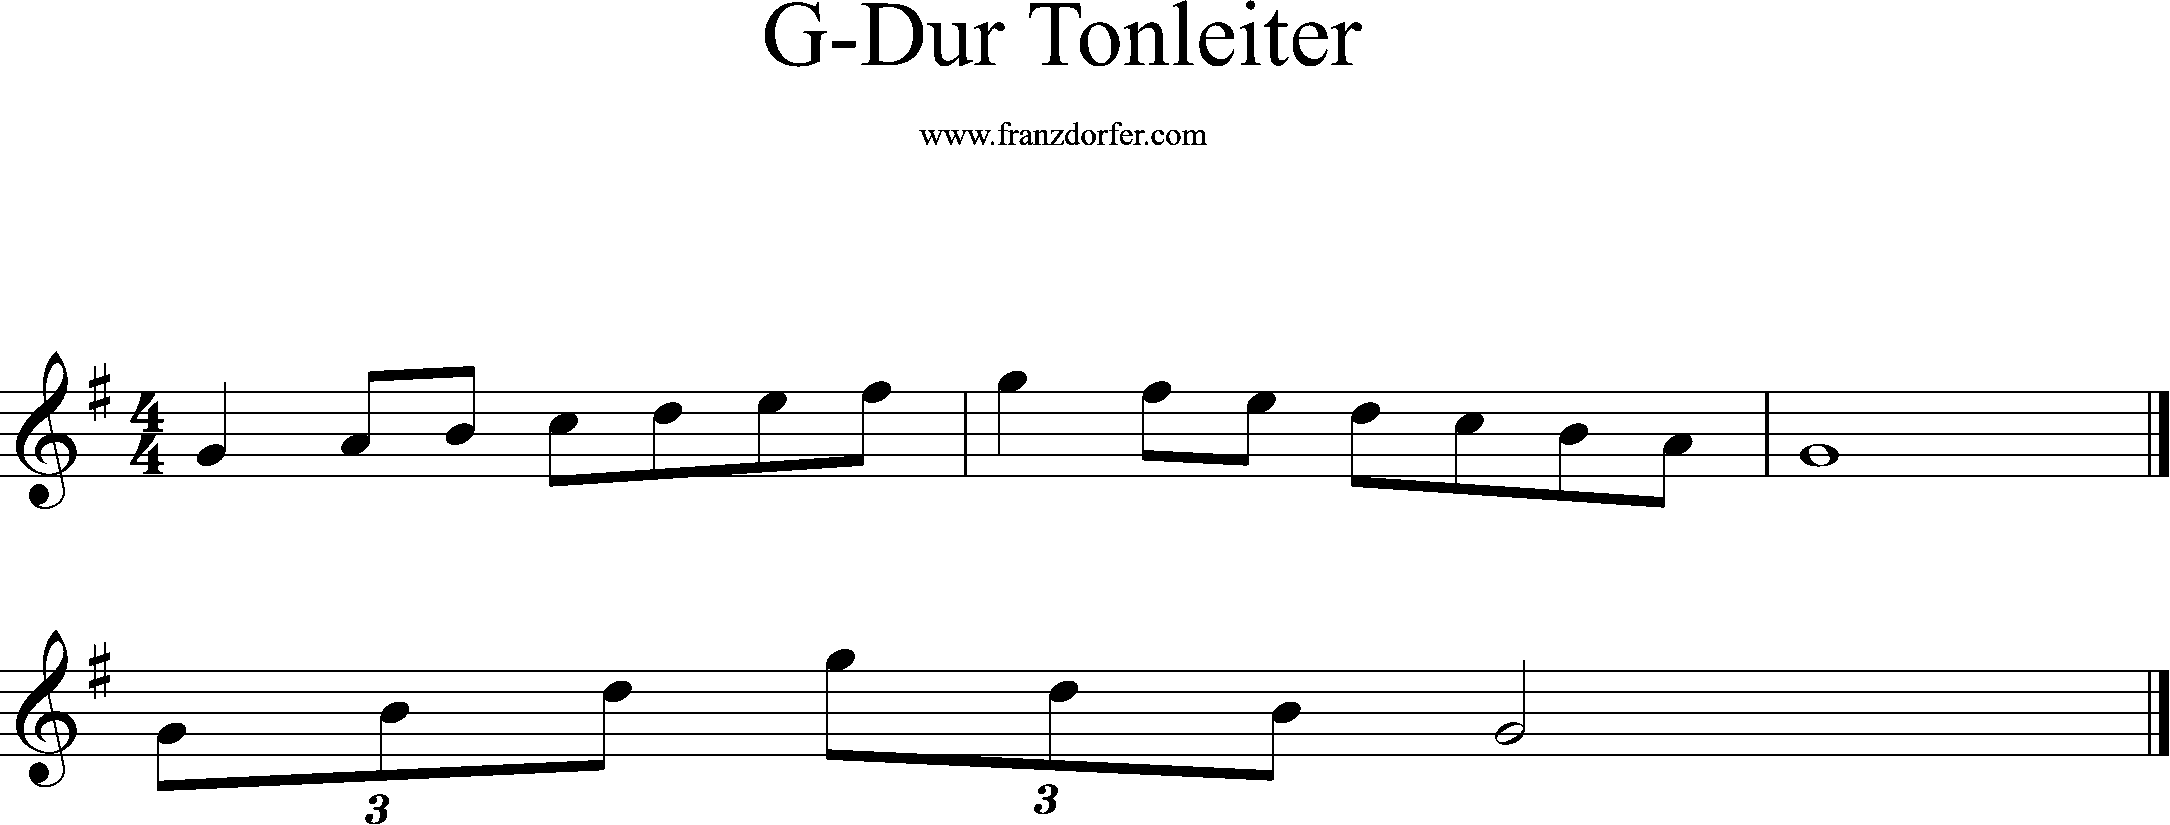 G-Dur Tonleiter, g1-g2